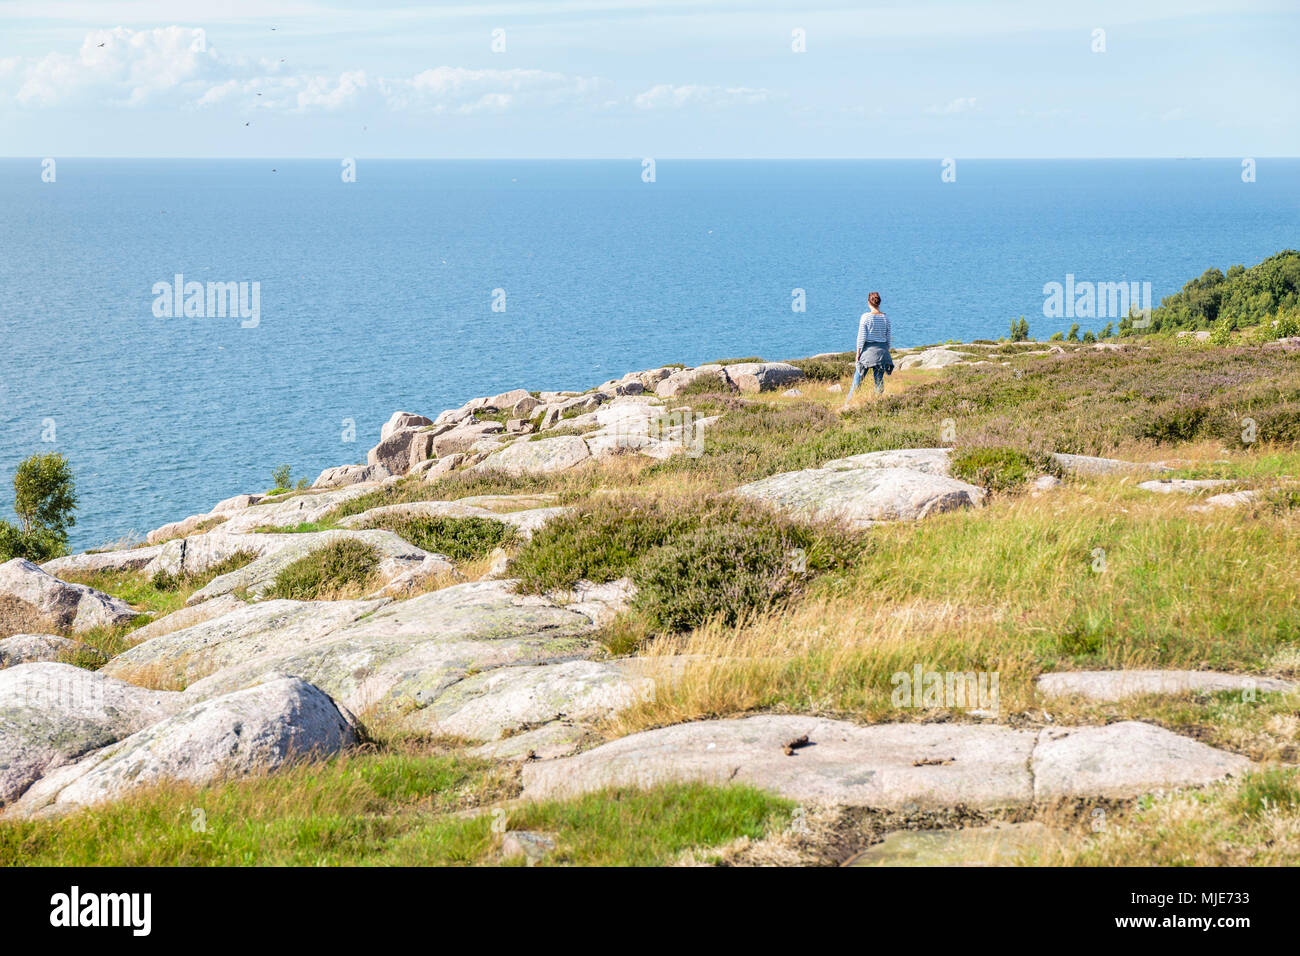 Il Slotslyngen a sud di Hammershus, il Mar Baltico in background, Europa, Danimarca, Bornholm, Foto Stock